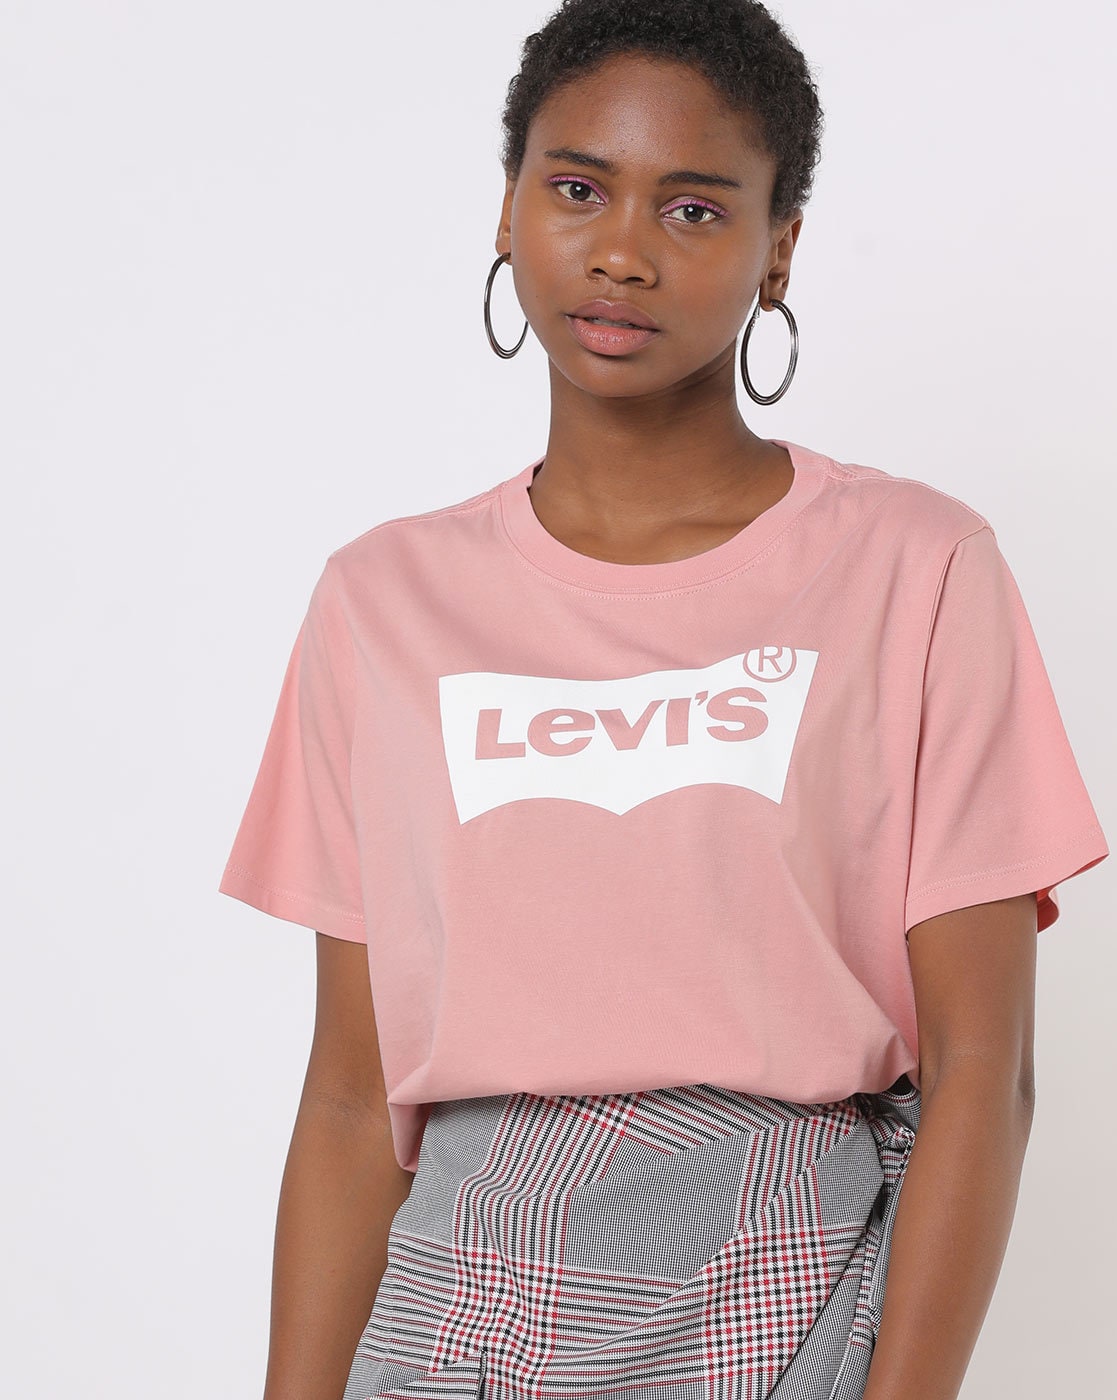 levis pink shirt